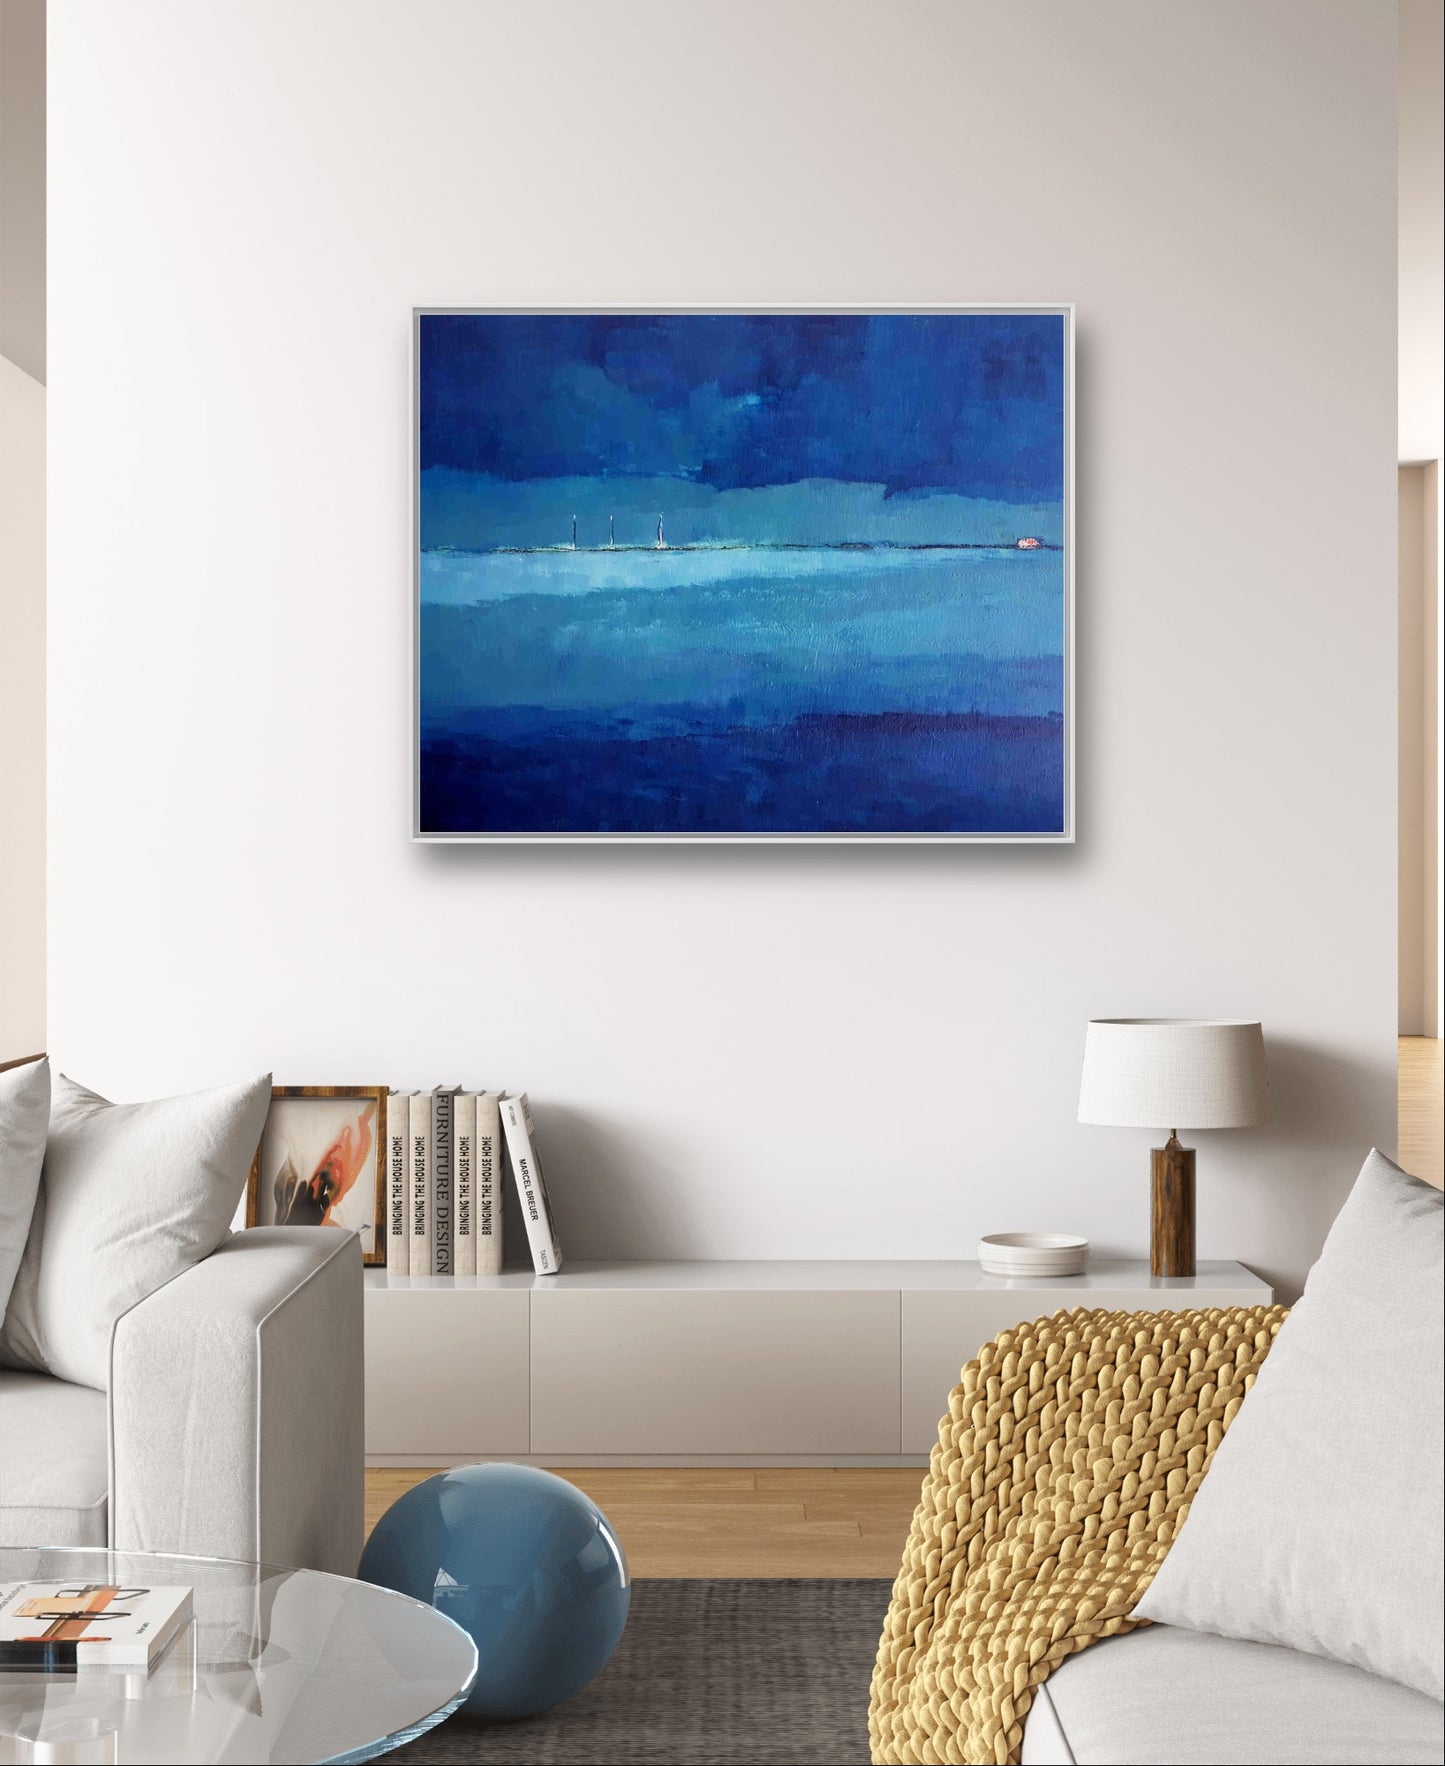 Auftragskunst, abstrakte Bilder, Urlaubsreise in Blau: Eine abstrakte maritime Landschaftskomposition,auftragskunst-blaues-bild, abstrakte Bilder kaufen ,